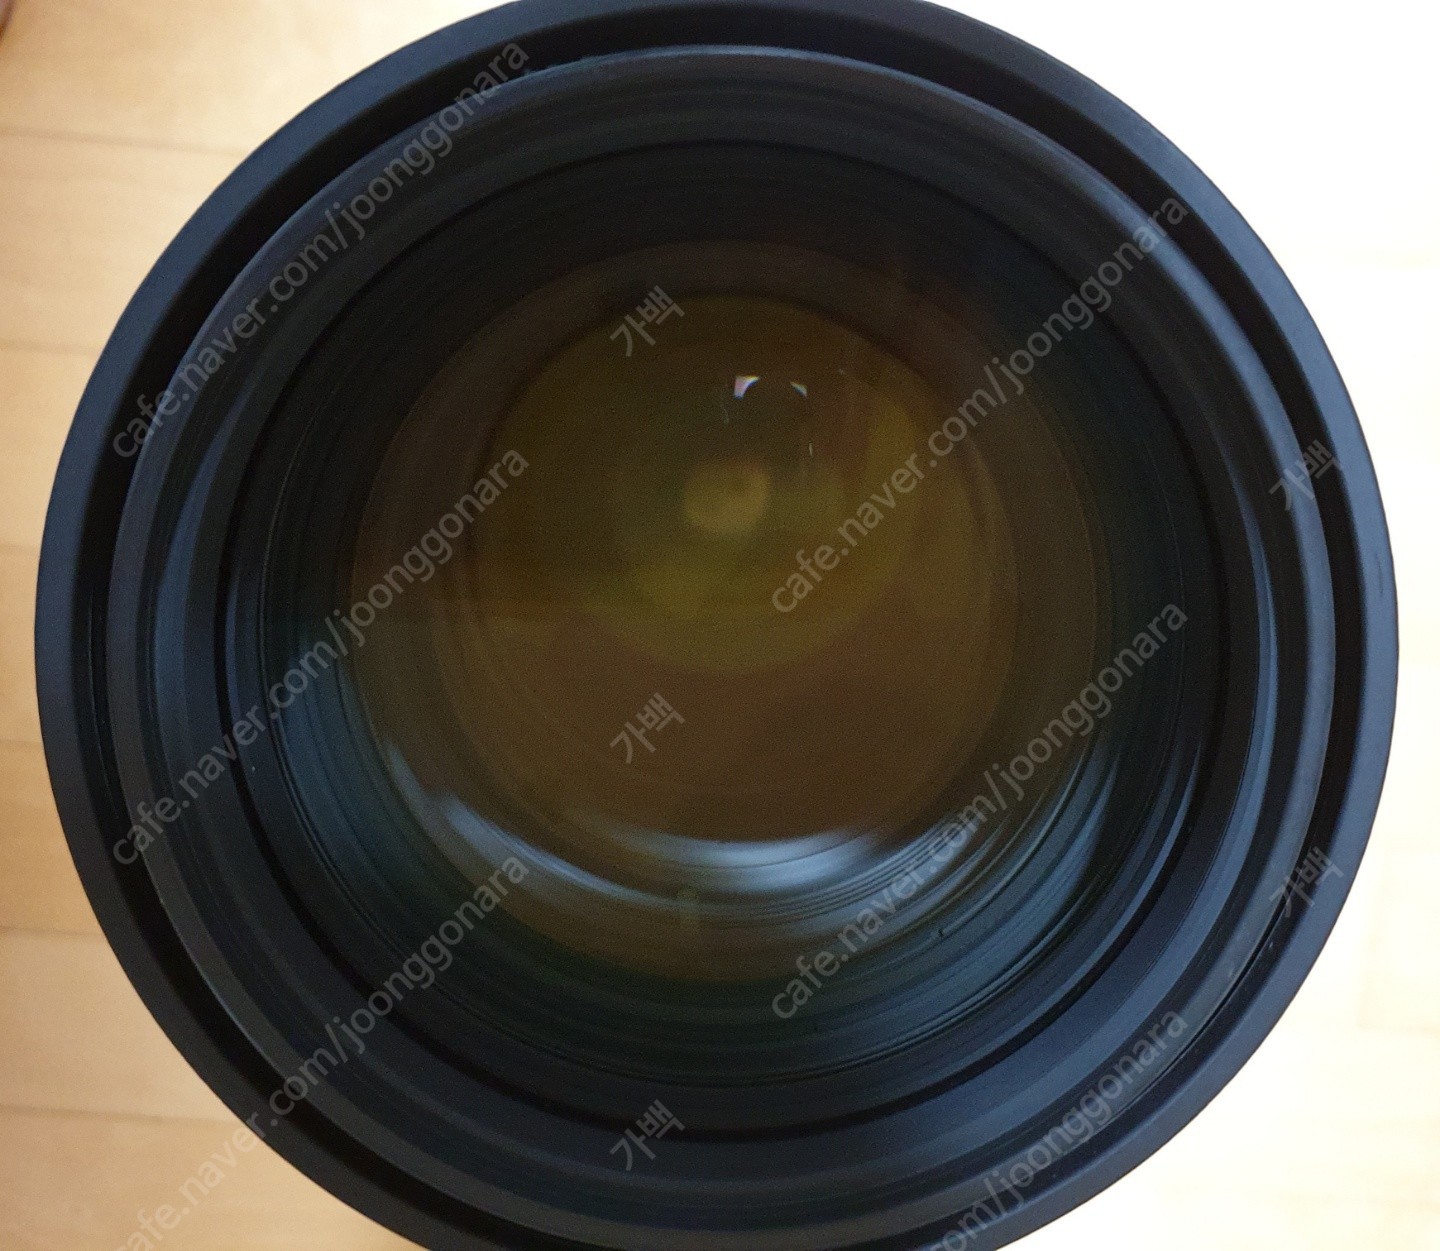 1608732017522.jpg : 니콘 NIKKOR 200-400mm f/4G ED VR II 렌즈(니콘 정품) 판매